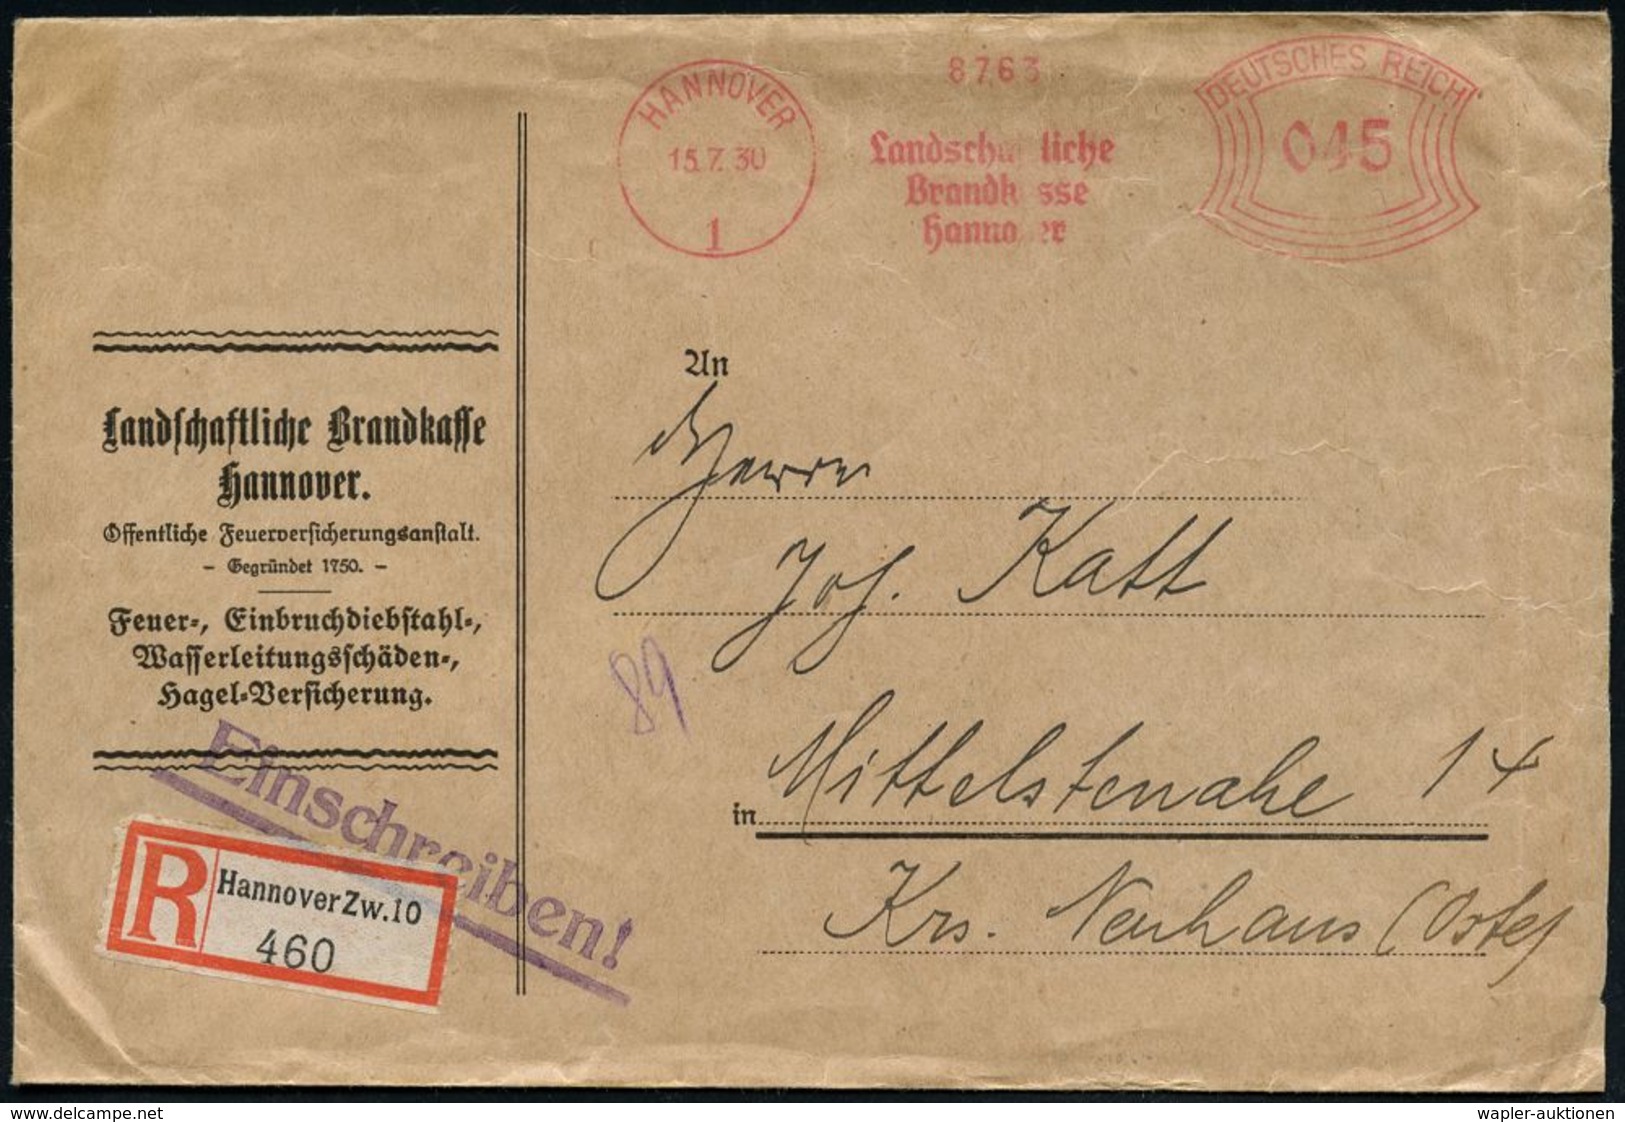 FEUERWEHR / BRANDVERHÜTUNG & -BEKÄMPFUNG : HANNOVER/ 1/ Landschaftliche/ Brandkasse.. 1930 (15.7.) AFS 045 Pf. + RZ: Han - Sapeurs-Pompiers